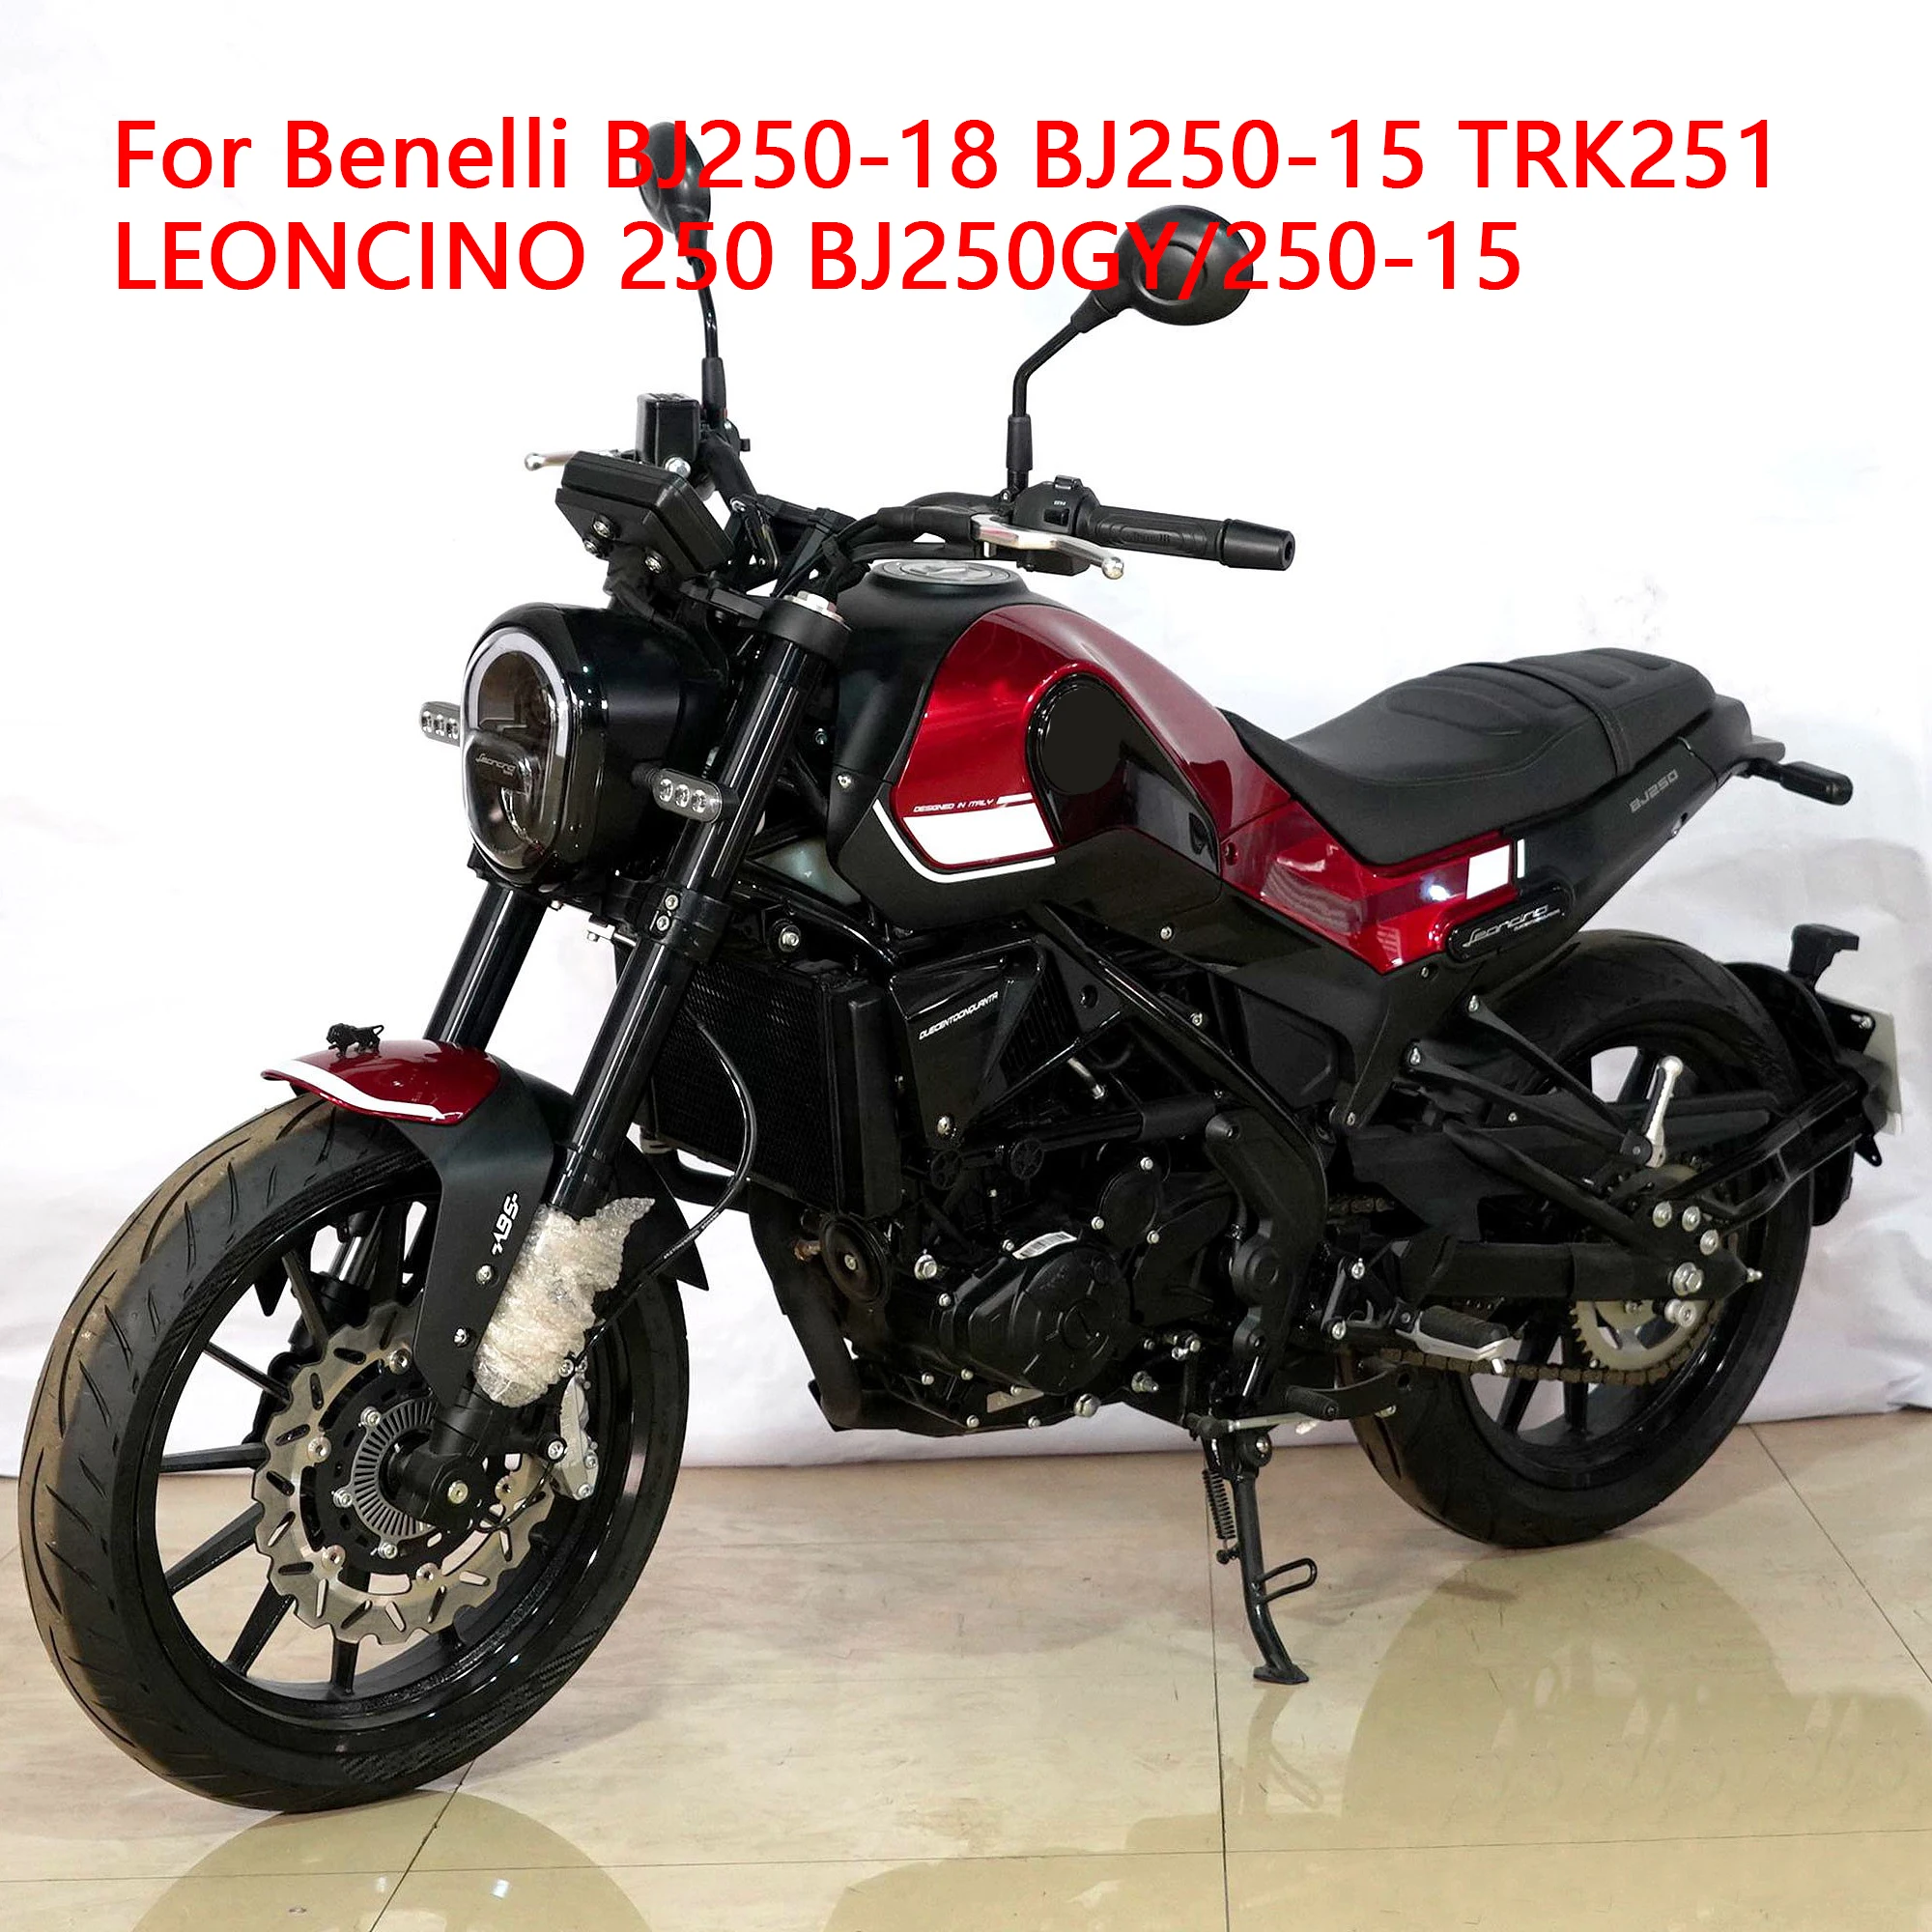 

Детали мотоциклетного двигателя, воздушные фильтры для Benz BJ250-18 TRK251 LEONCINO 250 BJ250GY/250-15, воздушный фильтр для мотоциклов